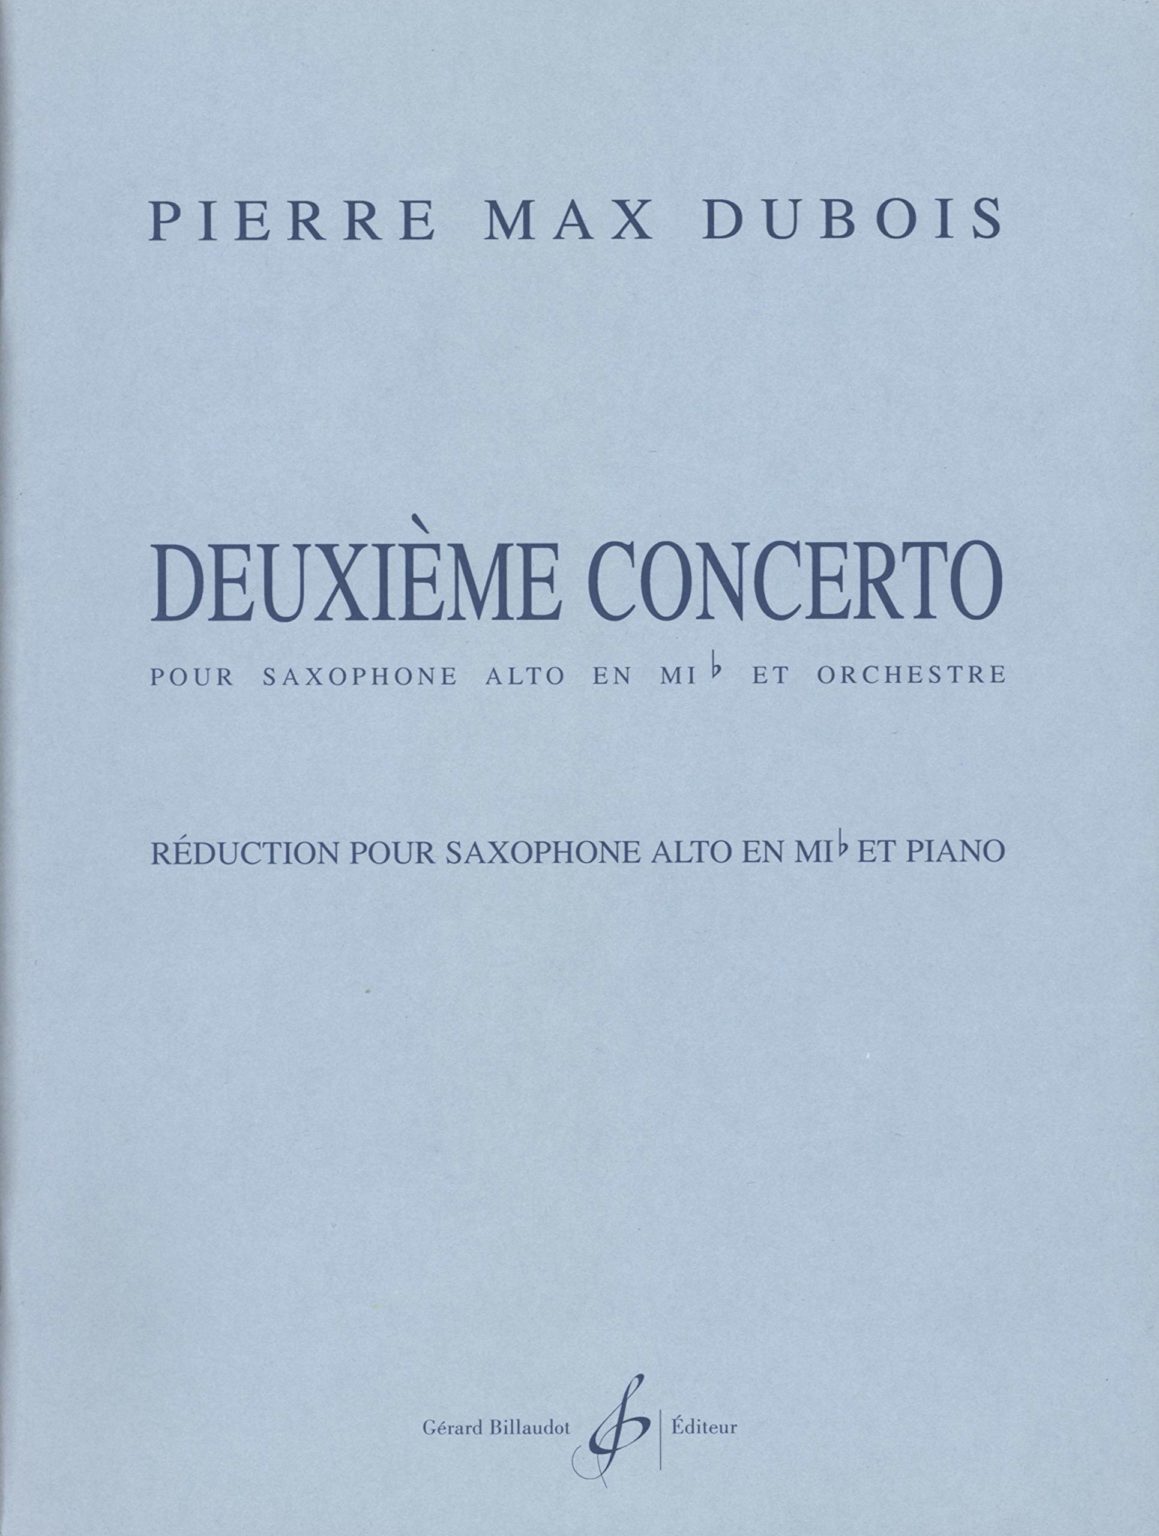 Deuxieme Concerto (1995) para saxofón alto y piano. Pierre Max Dubois